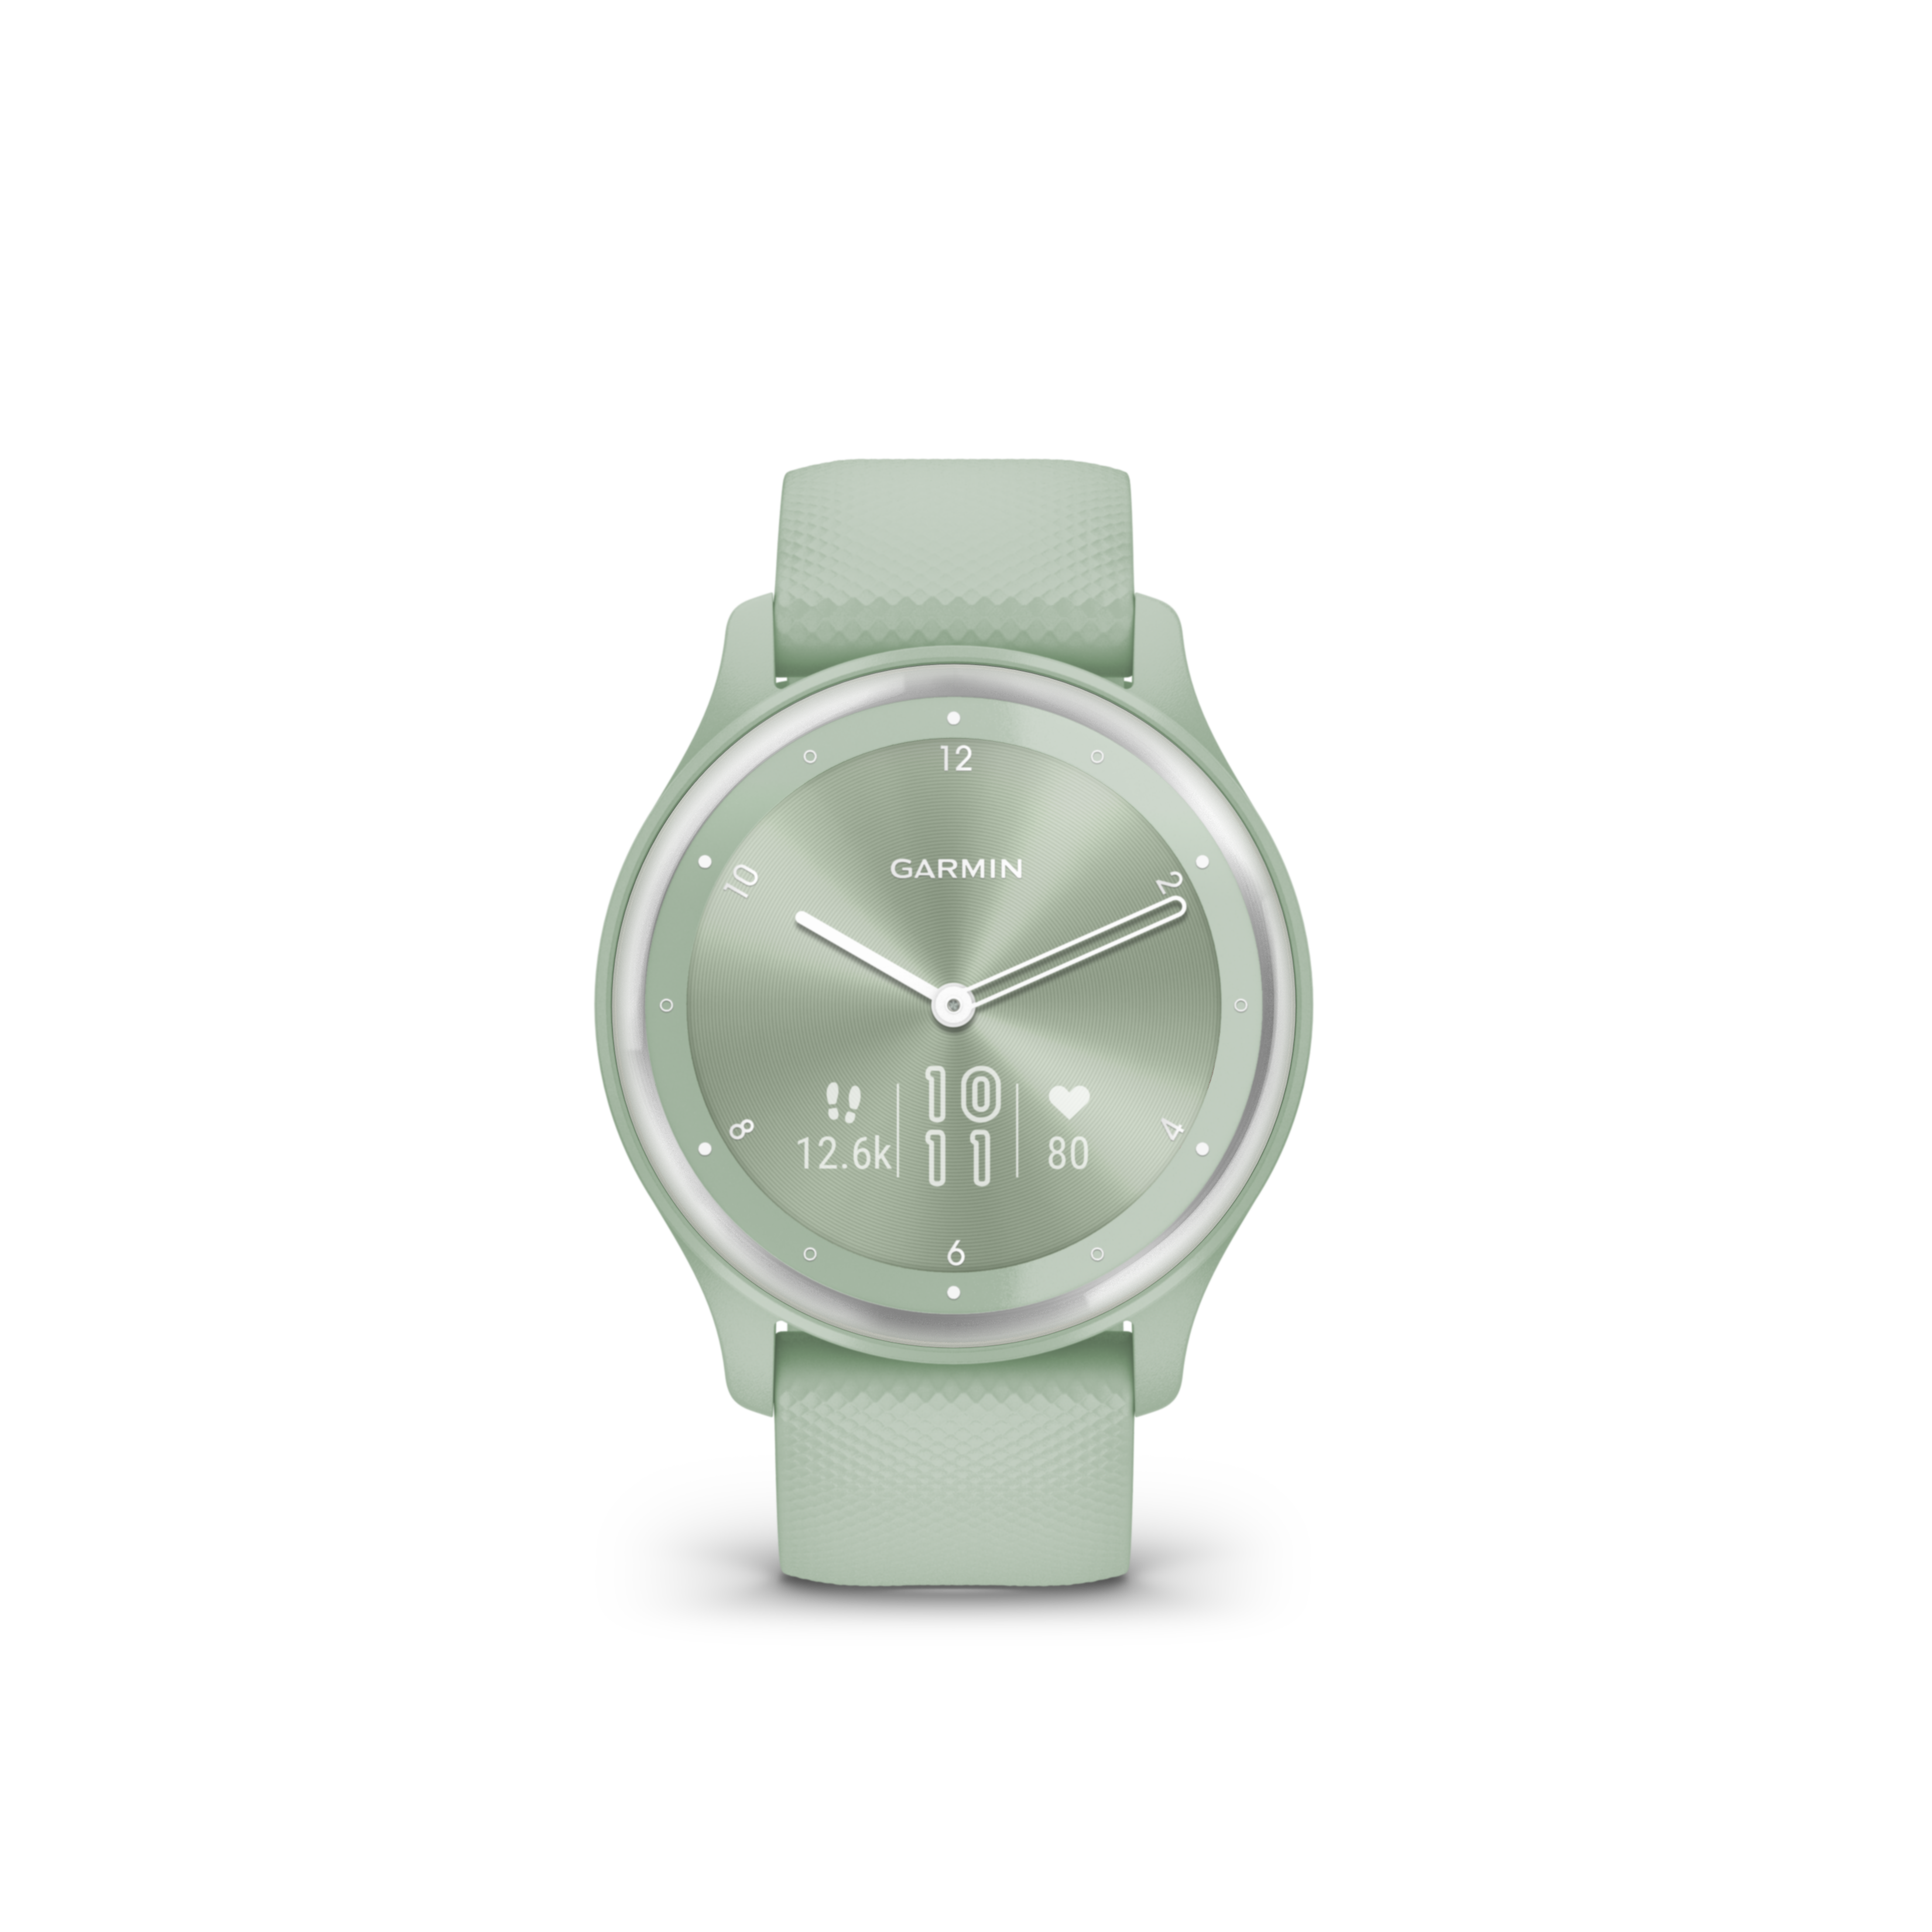 ‘Vívomove Sport’ Hybrid Smartwatch, A Timeless Blend of Fashion and Technology